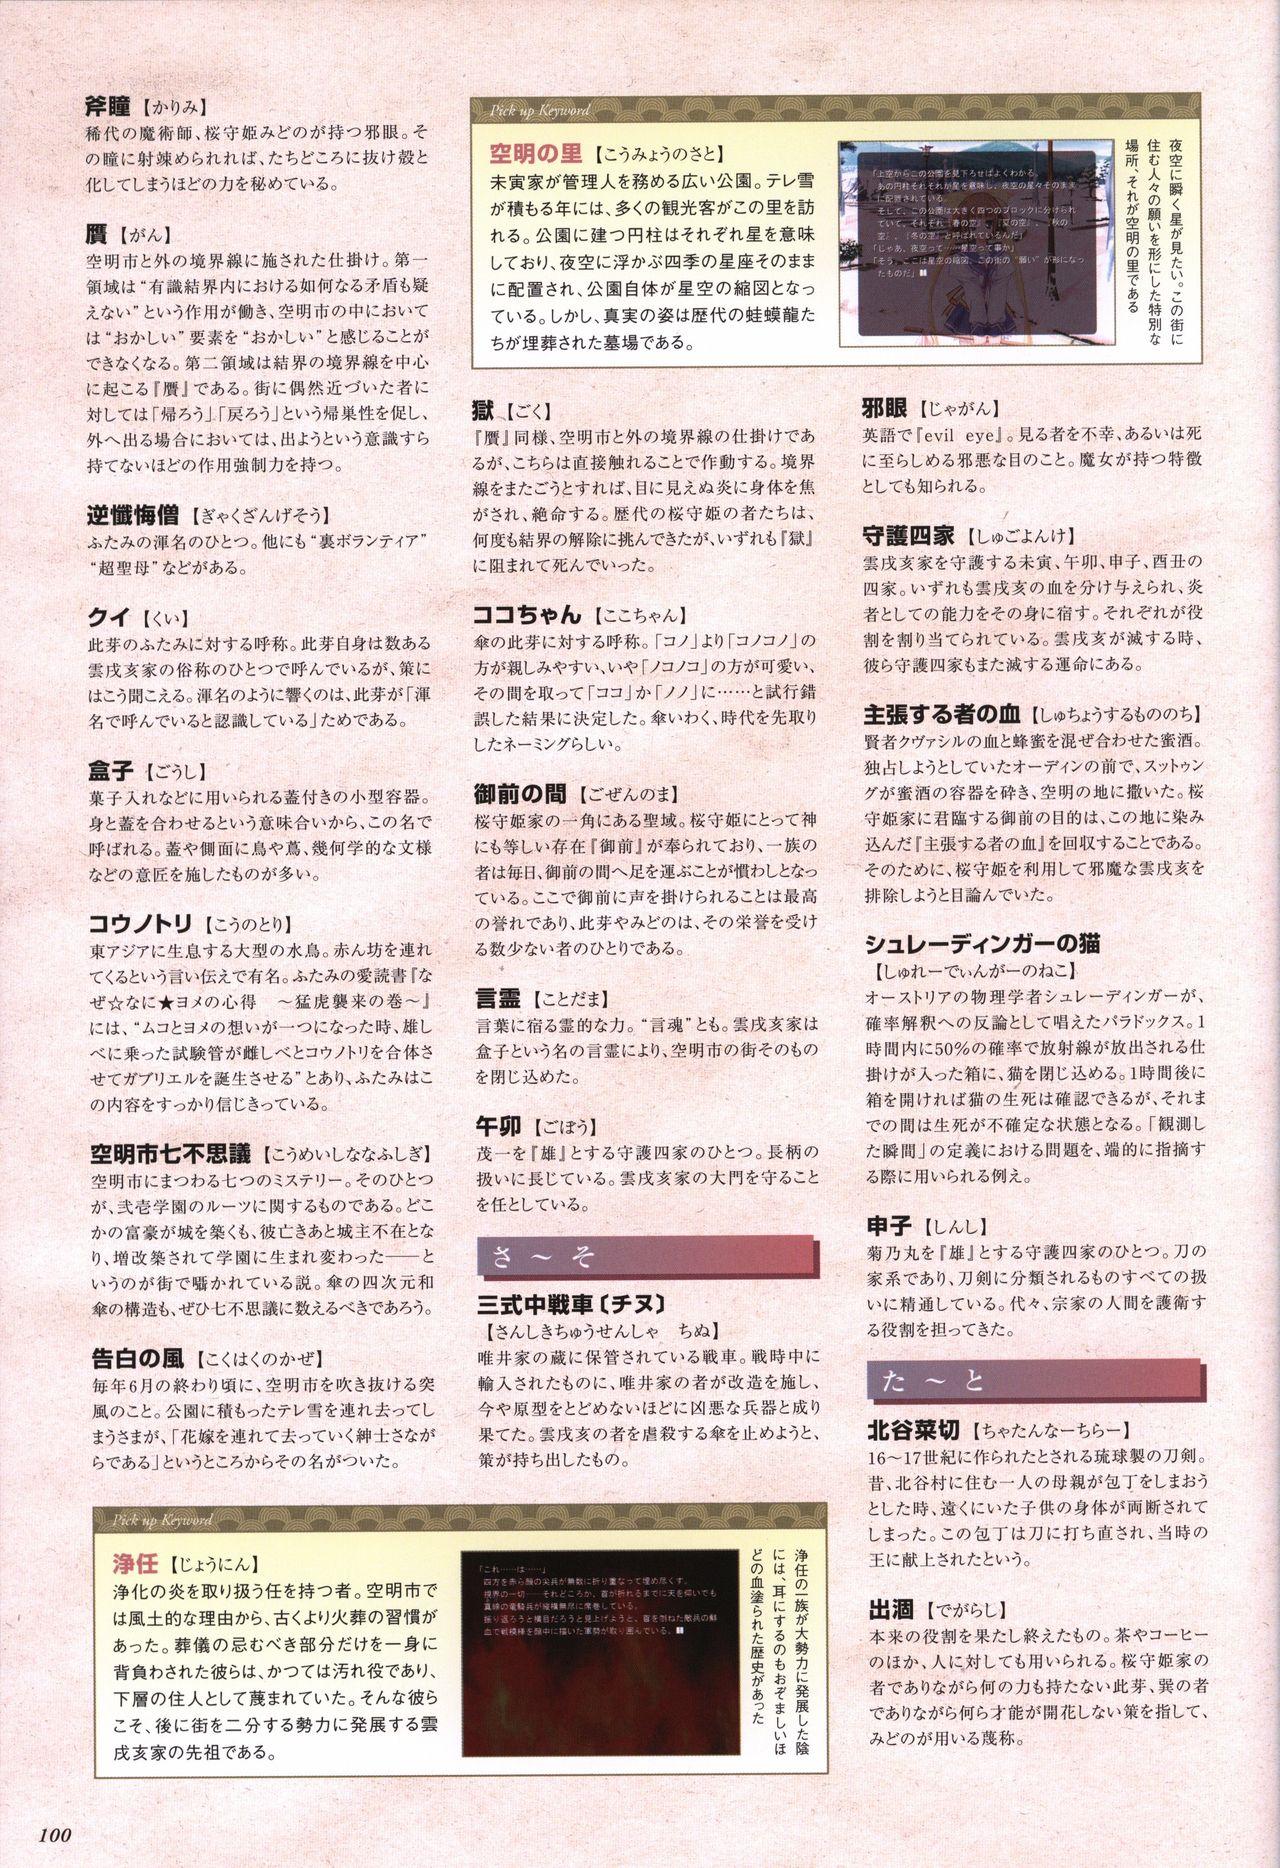 Itsuka, Todoku, Ano Sora ni. visual fanbook 100